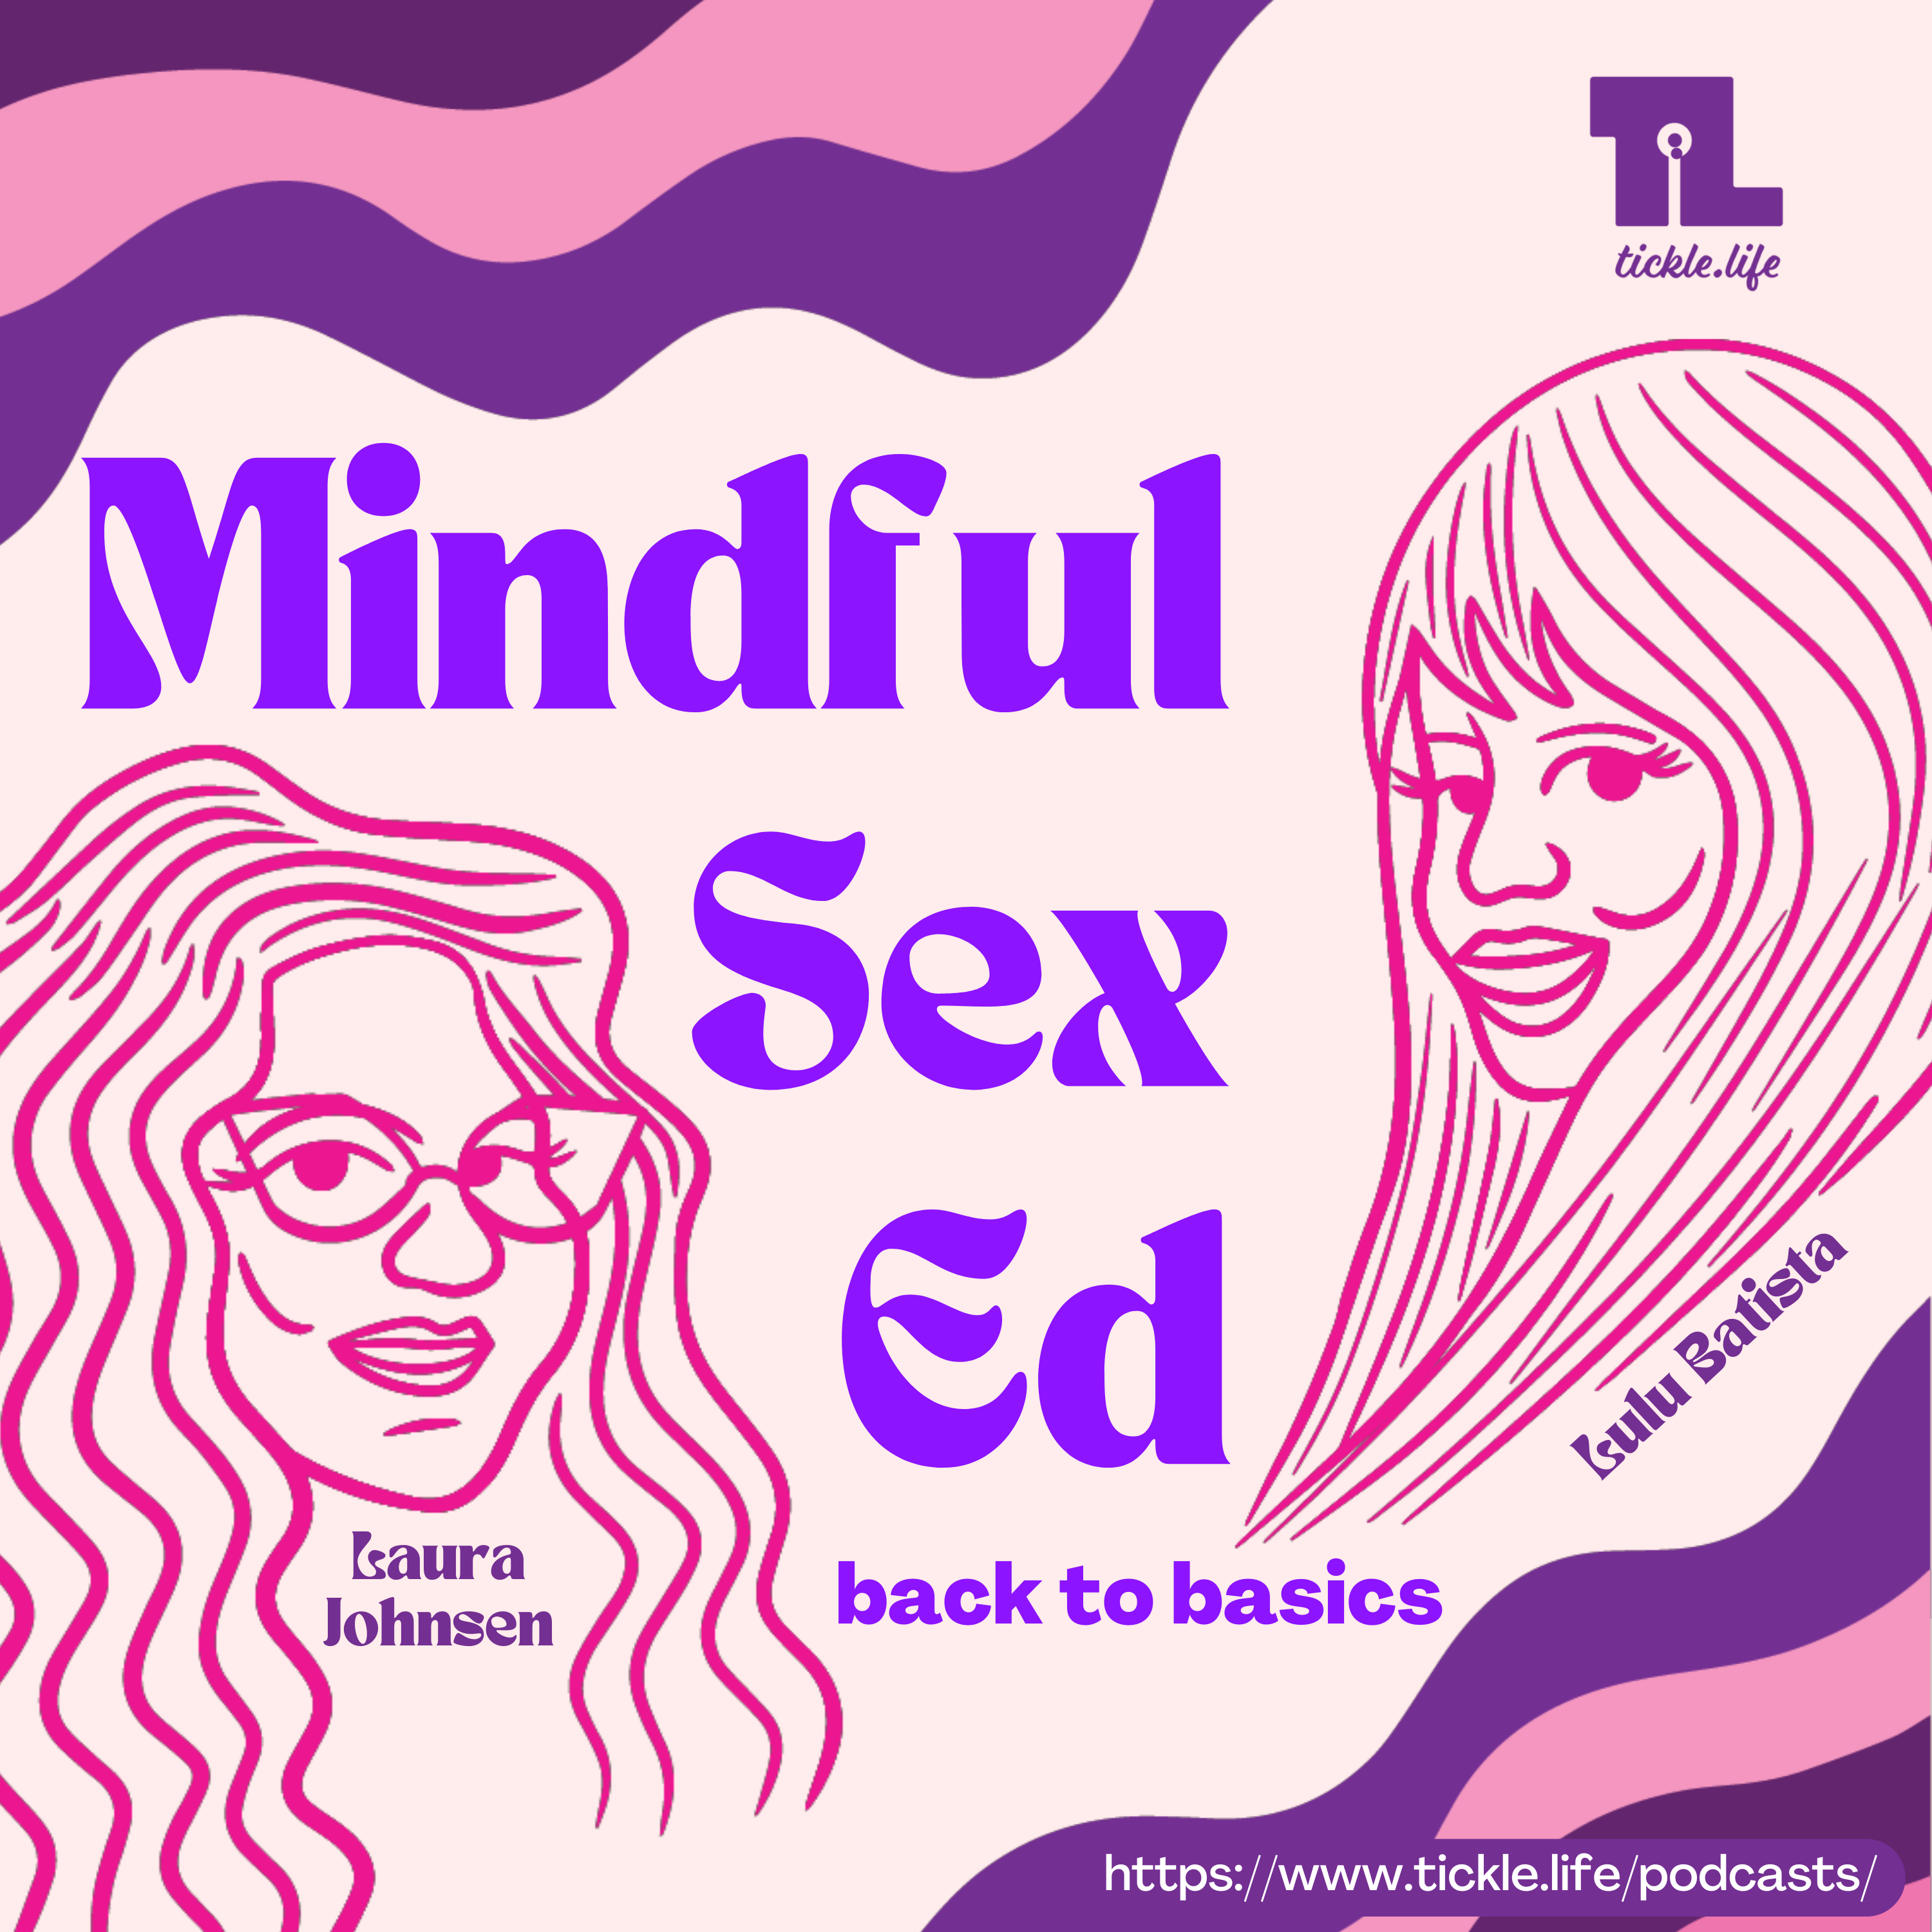 Mindful Sex Ed: Back to Basics